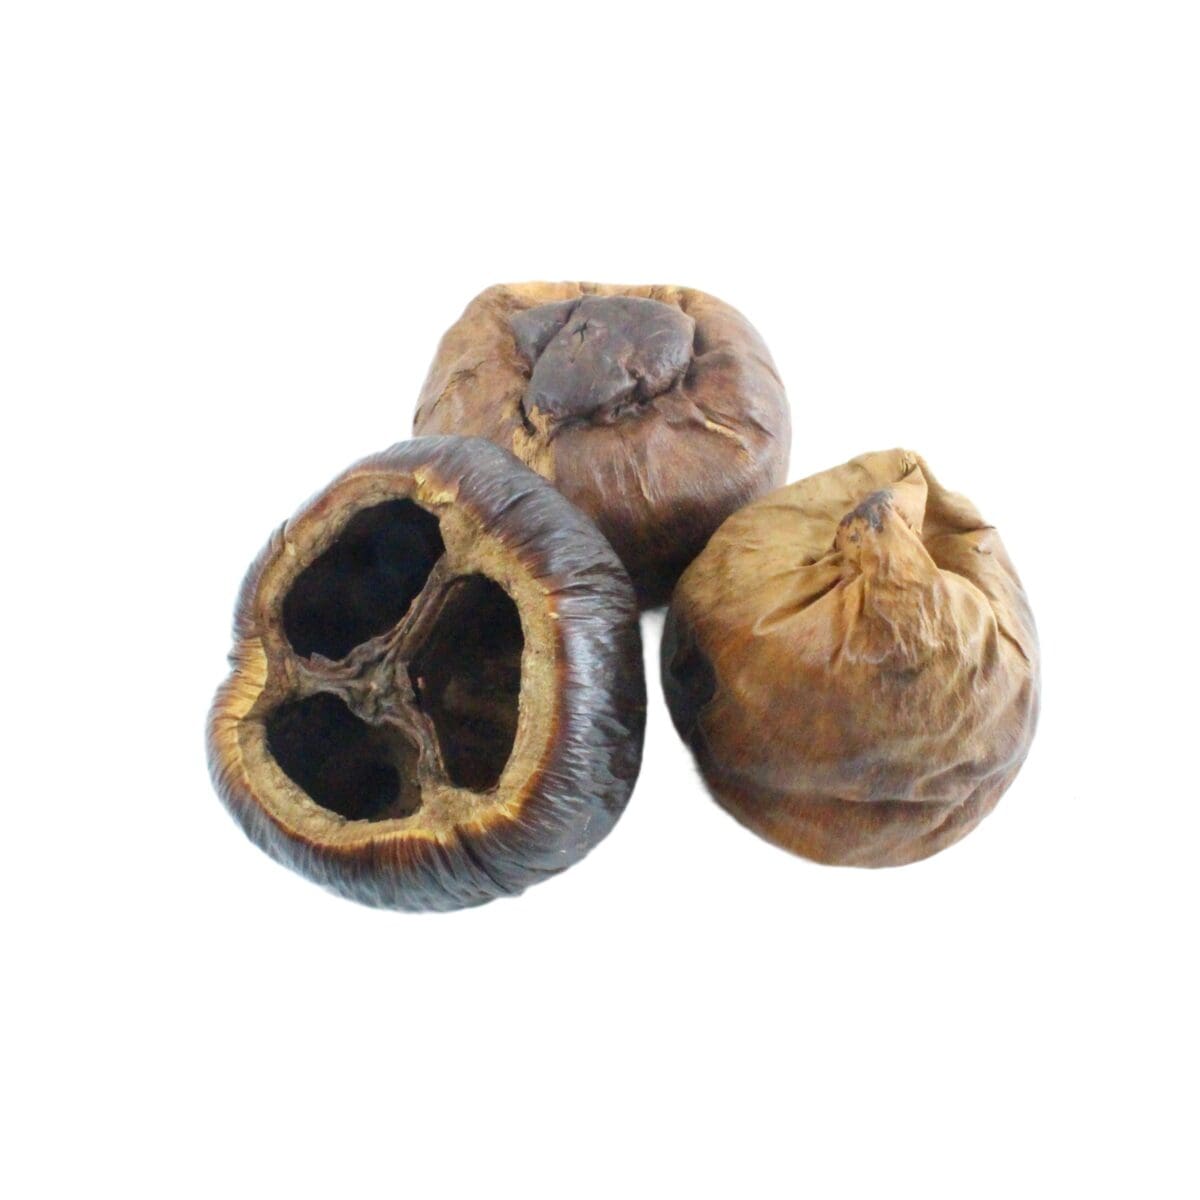 dried talami pods